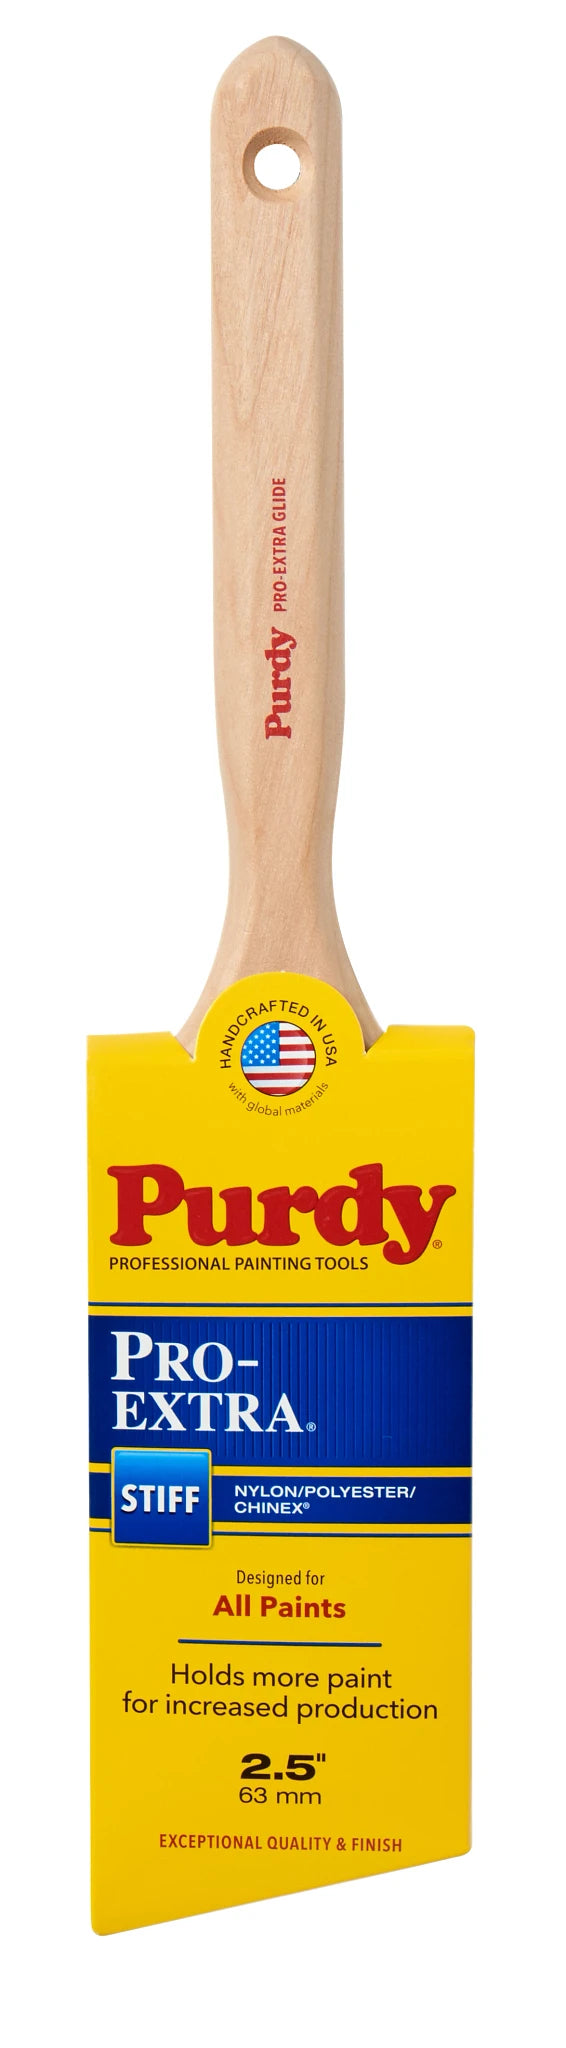 Purdy Pro Extra Brush